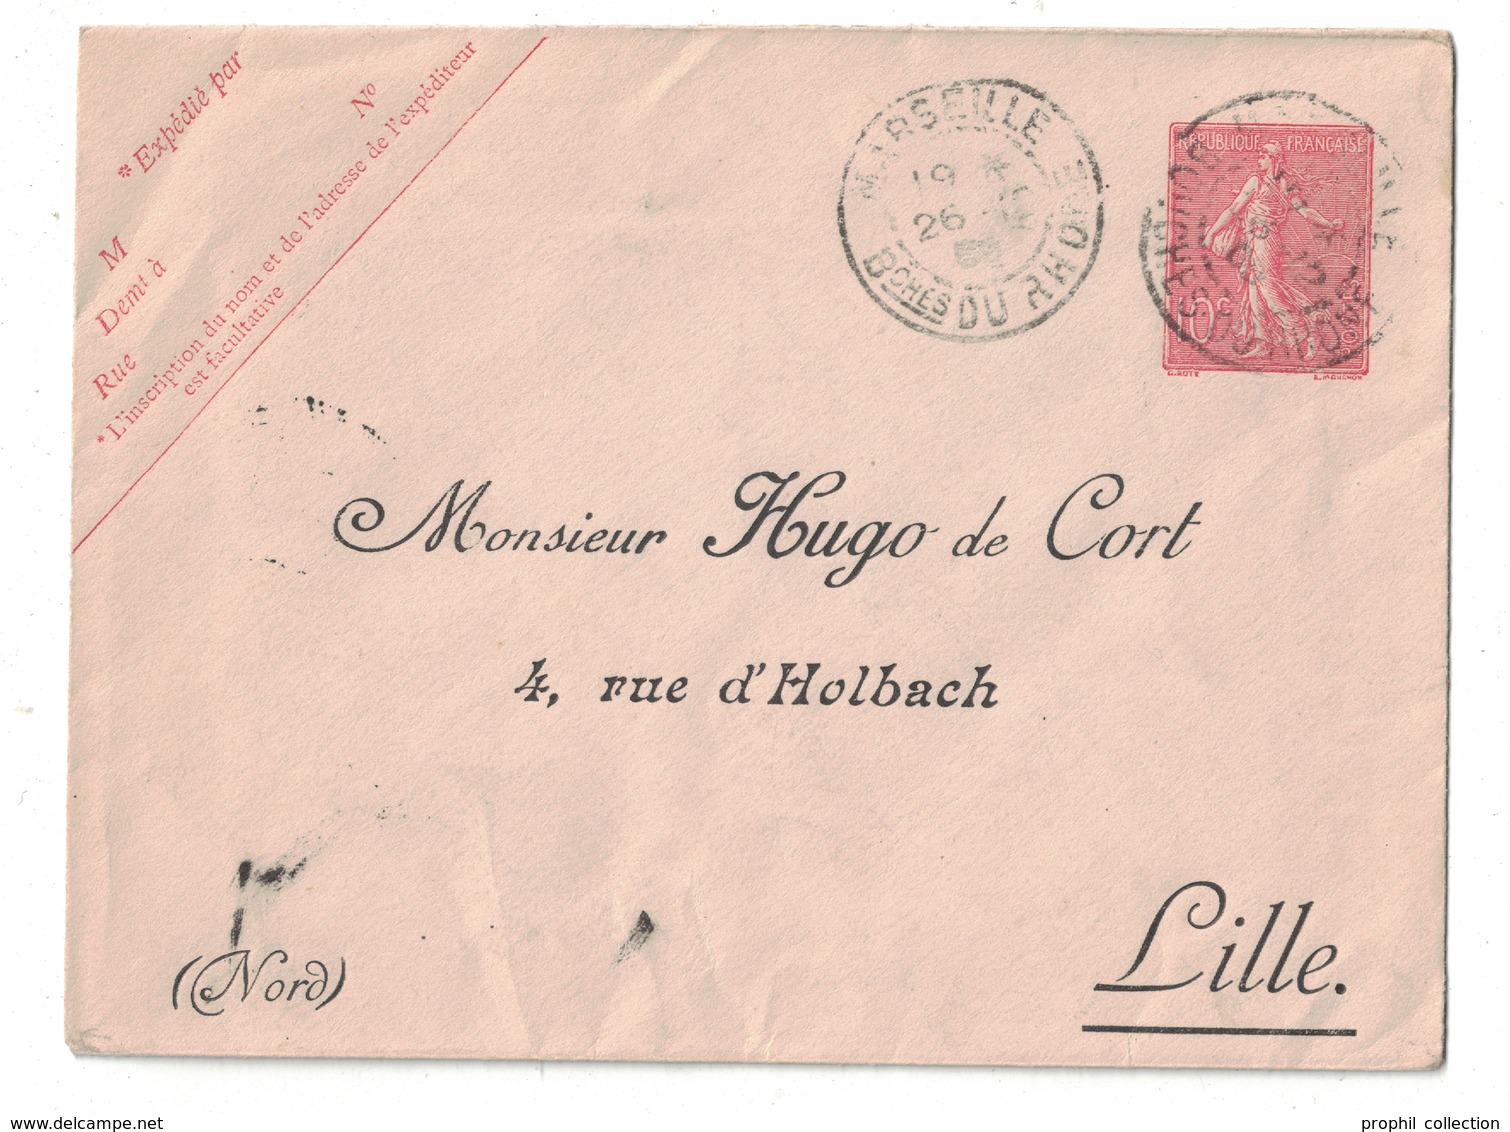 ENTIER Avec REPIQUAGE PRIVÉ " HUGO DE CORT / LILLE " Sur ENVELOPPE TYPE SEMEUSE LIGNÉE 10c ROSE CAD MARSEILLE 1909 - Overprinted Covers (before 1995)